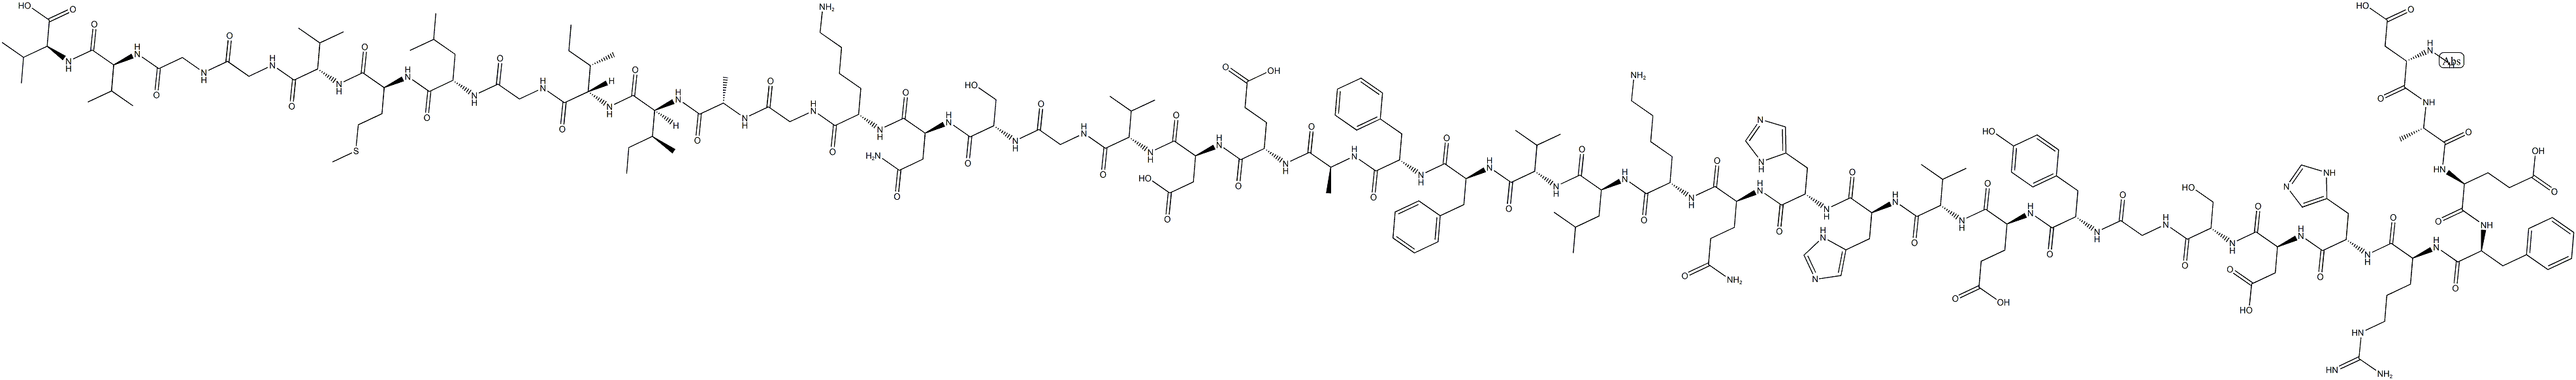 アミロイドΒ-プロテイン (ヒト, 1-40) 化学構造式